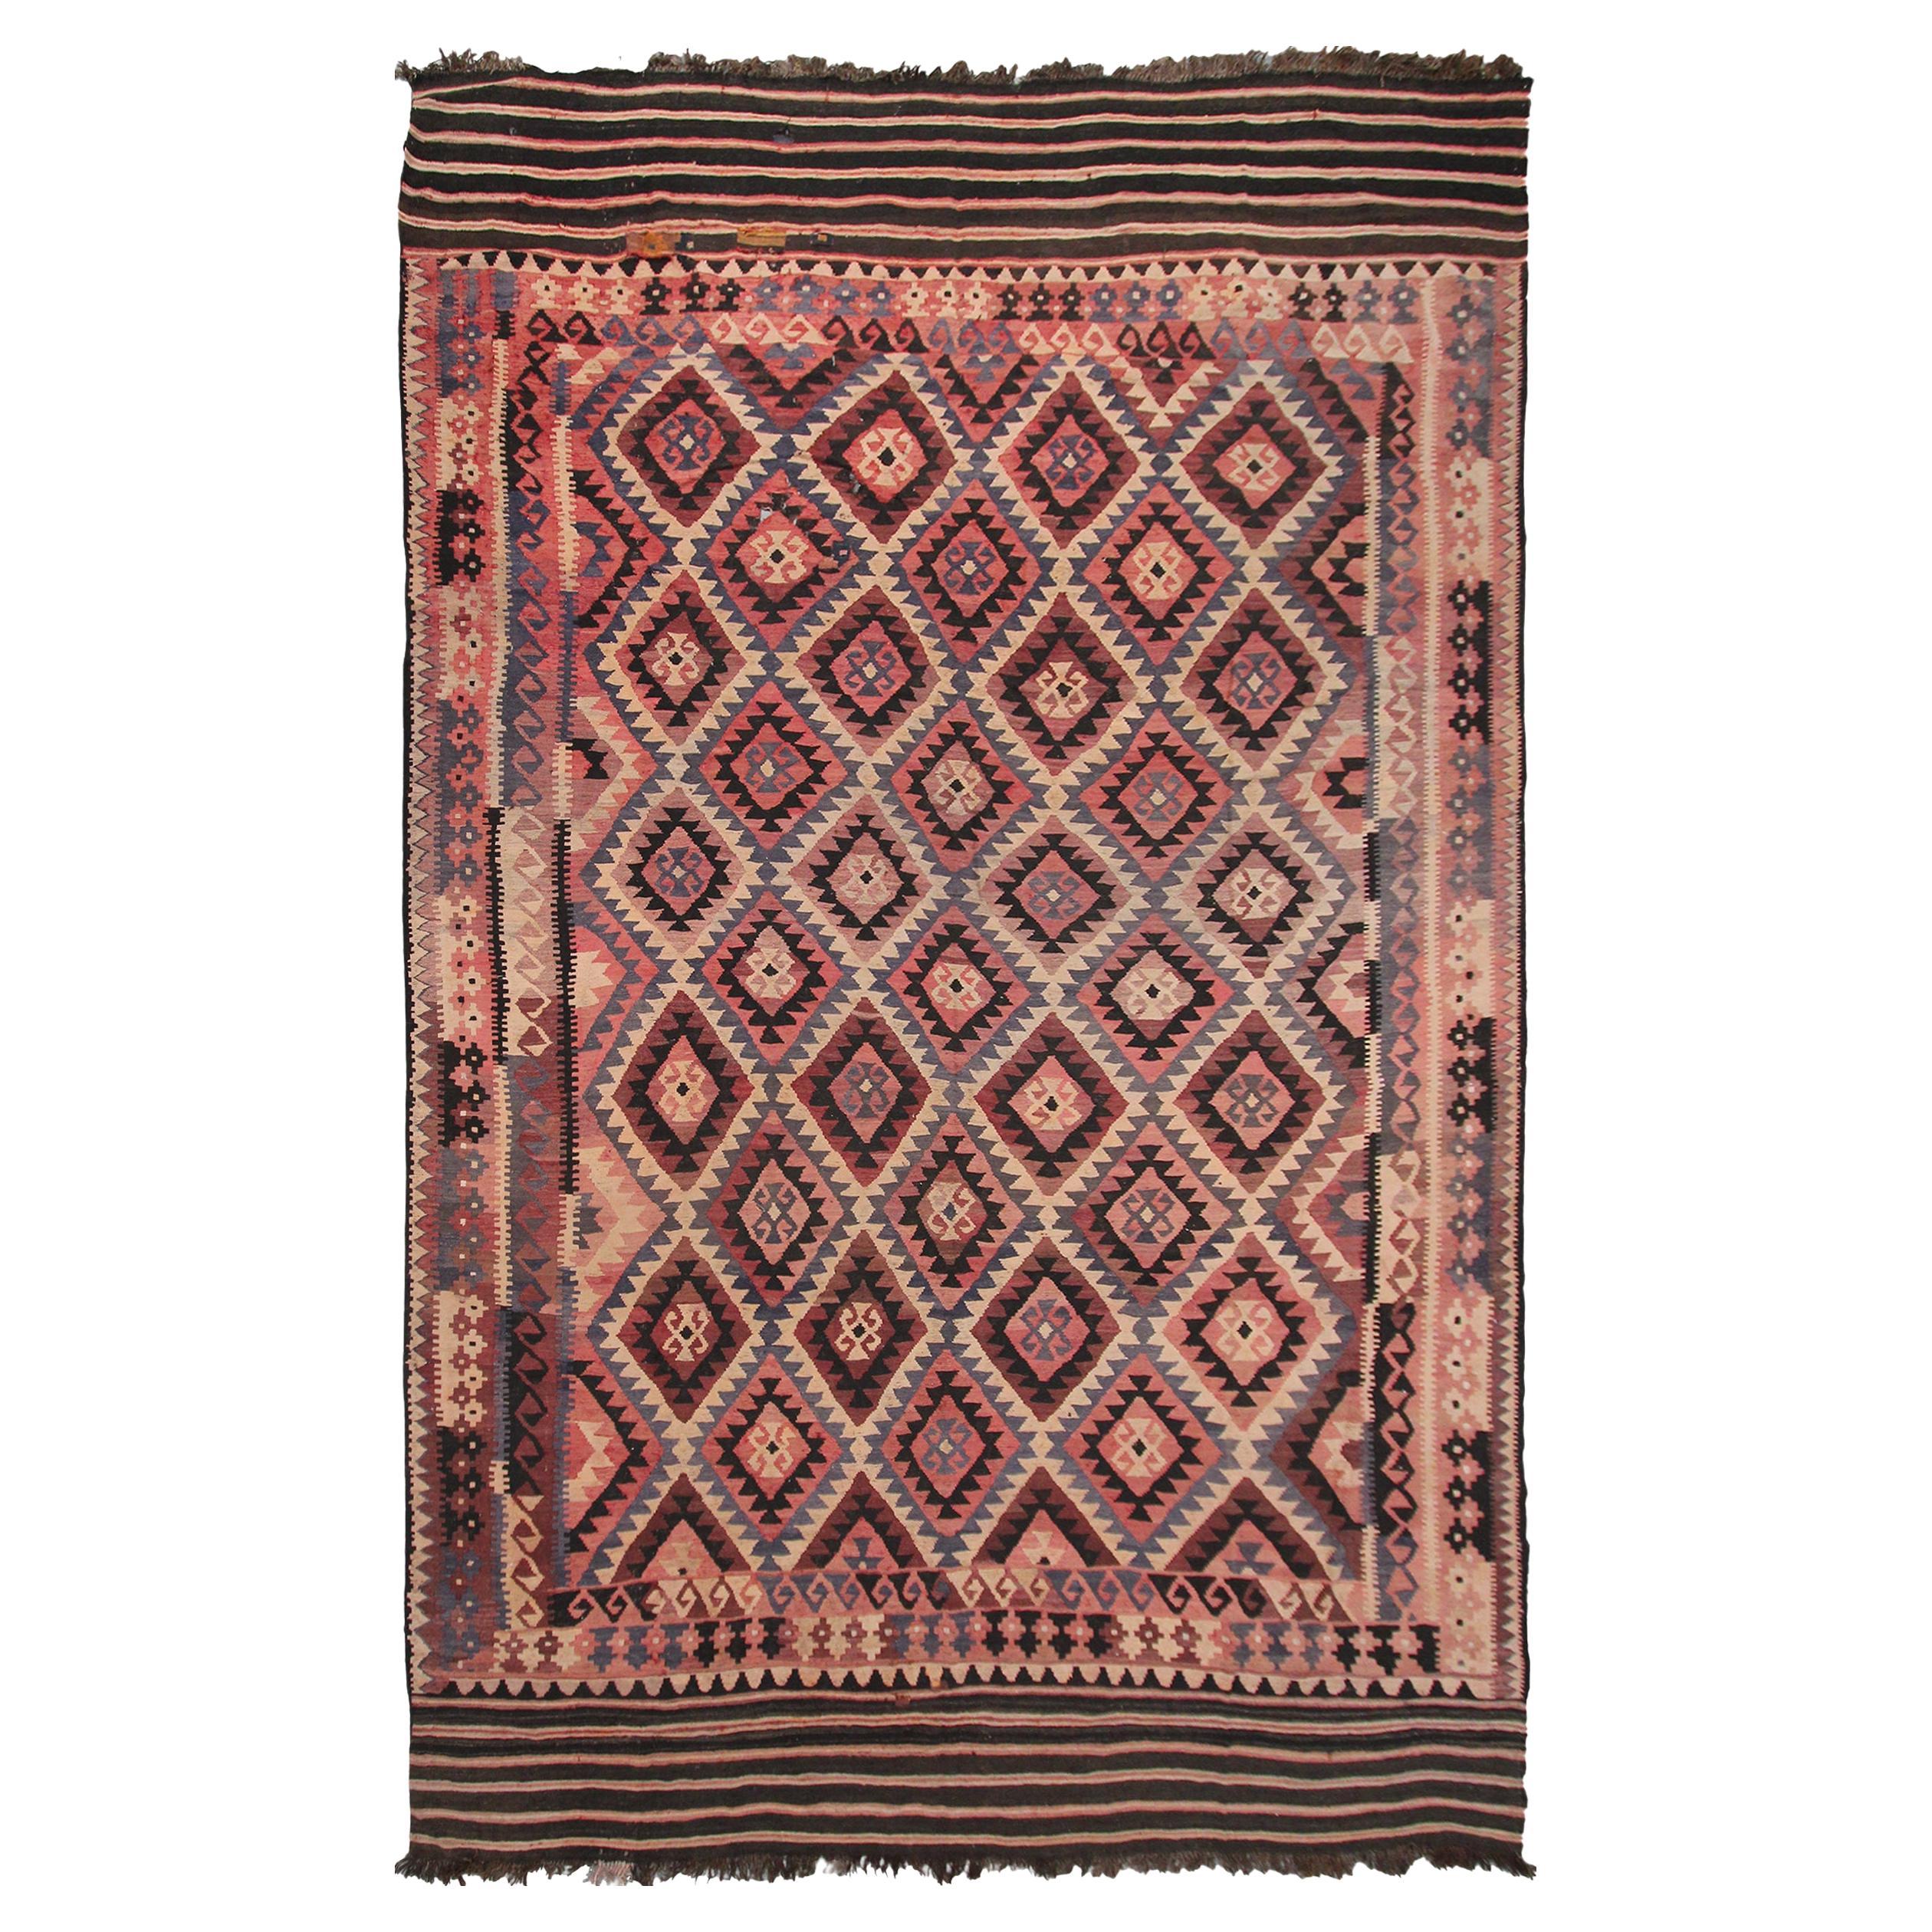 1920 Antique Tribal Kelim Flatwoven Kilim Rug Geometric Rug 10x16 310cm x 472cm